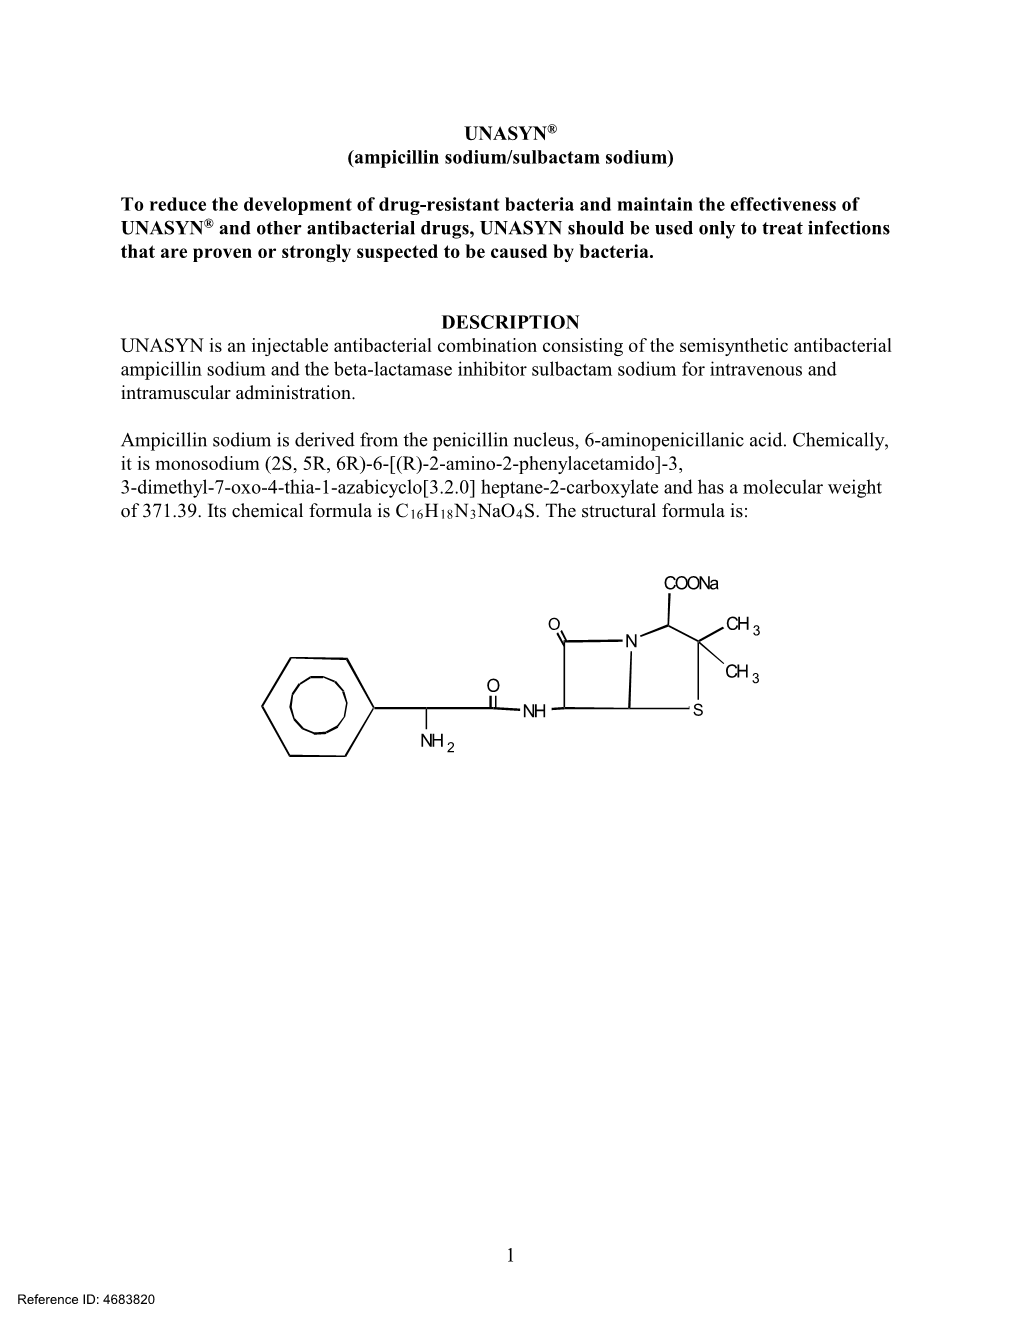 UNASYN® (Ampicillin Sodium/Sulbactam Sodium)